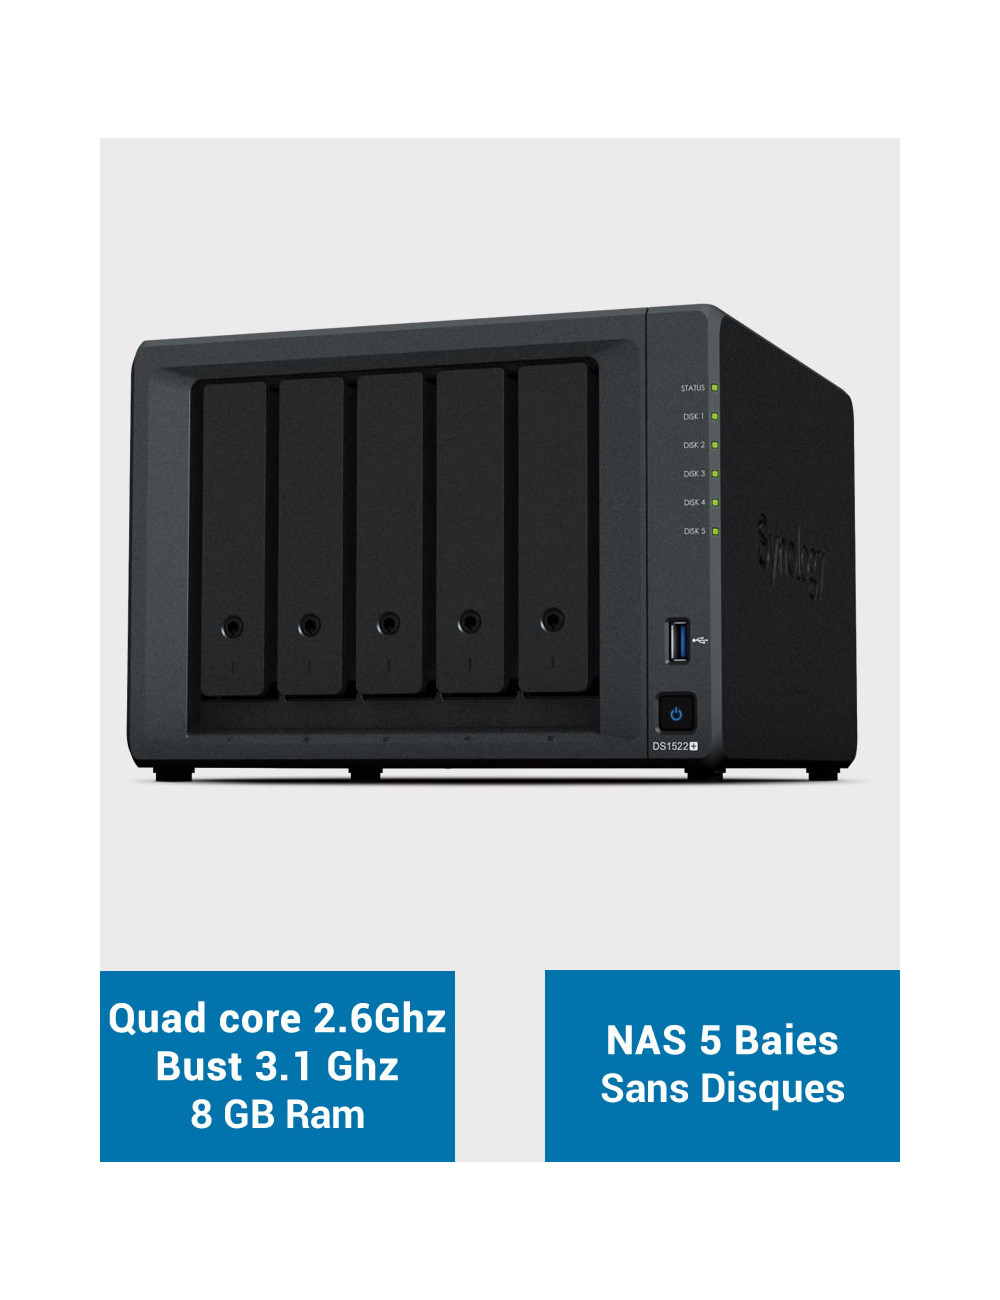 Synology DiskStation® DS1522+ NAS Server (Diskless)